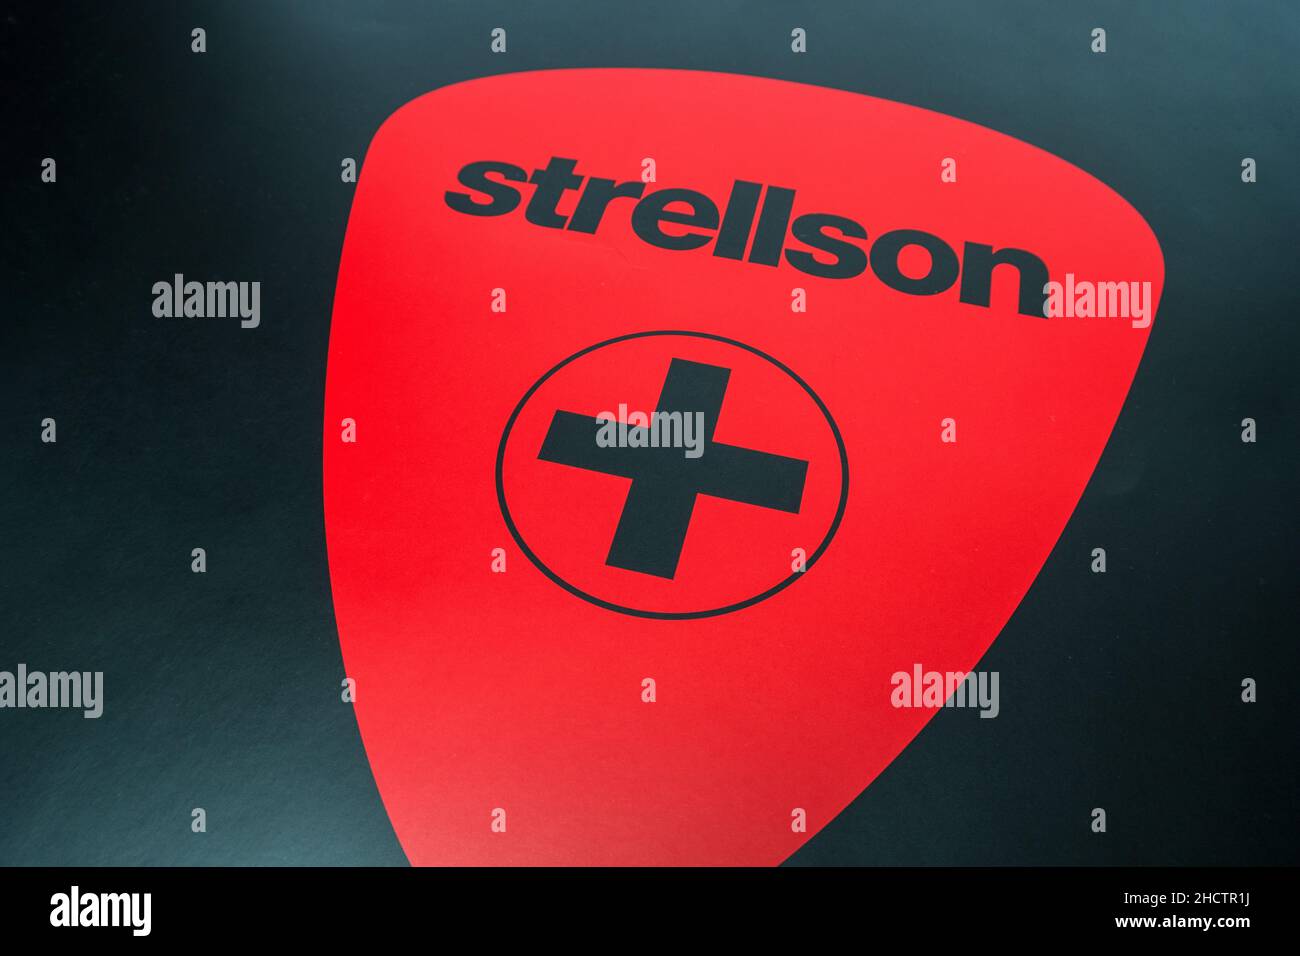 Logo de la marque 'Strellson'.Strellson a été créé en 1984 par la société Strellson AG.La gamme de produits comprend principalement des costumes, des pantalons, des chemises, des chandails, Banque D'Images